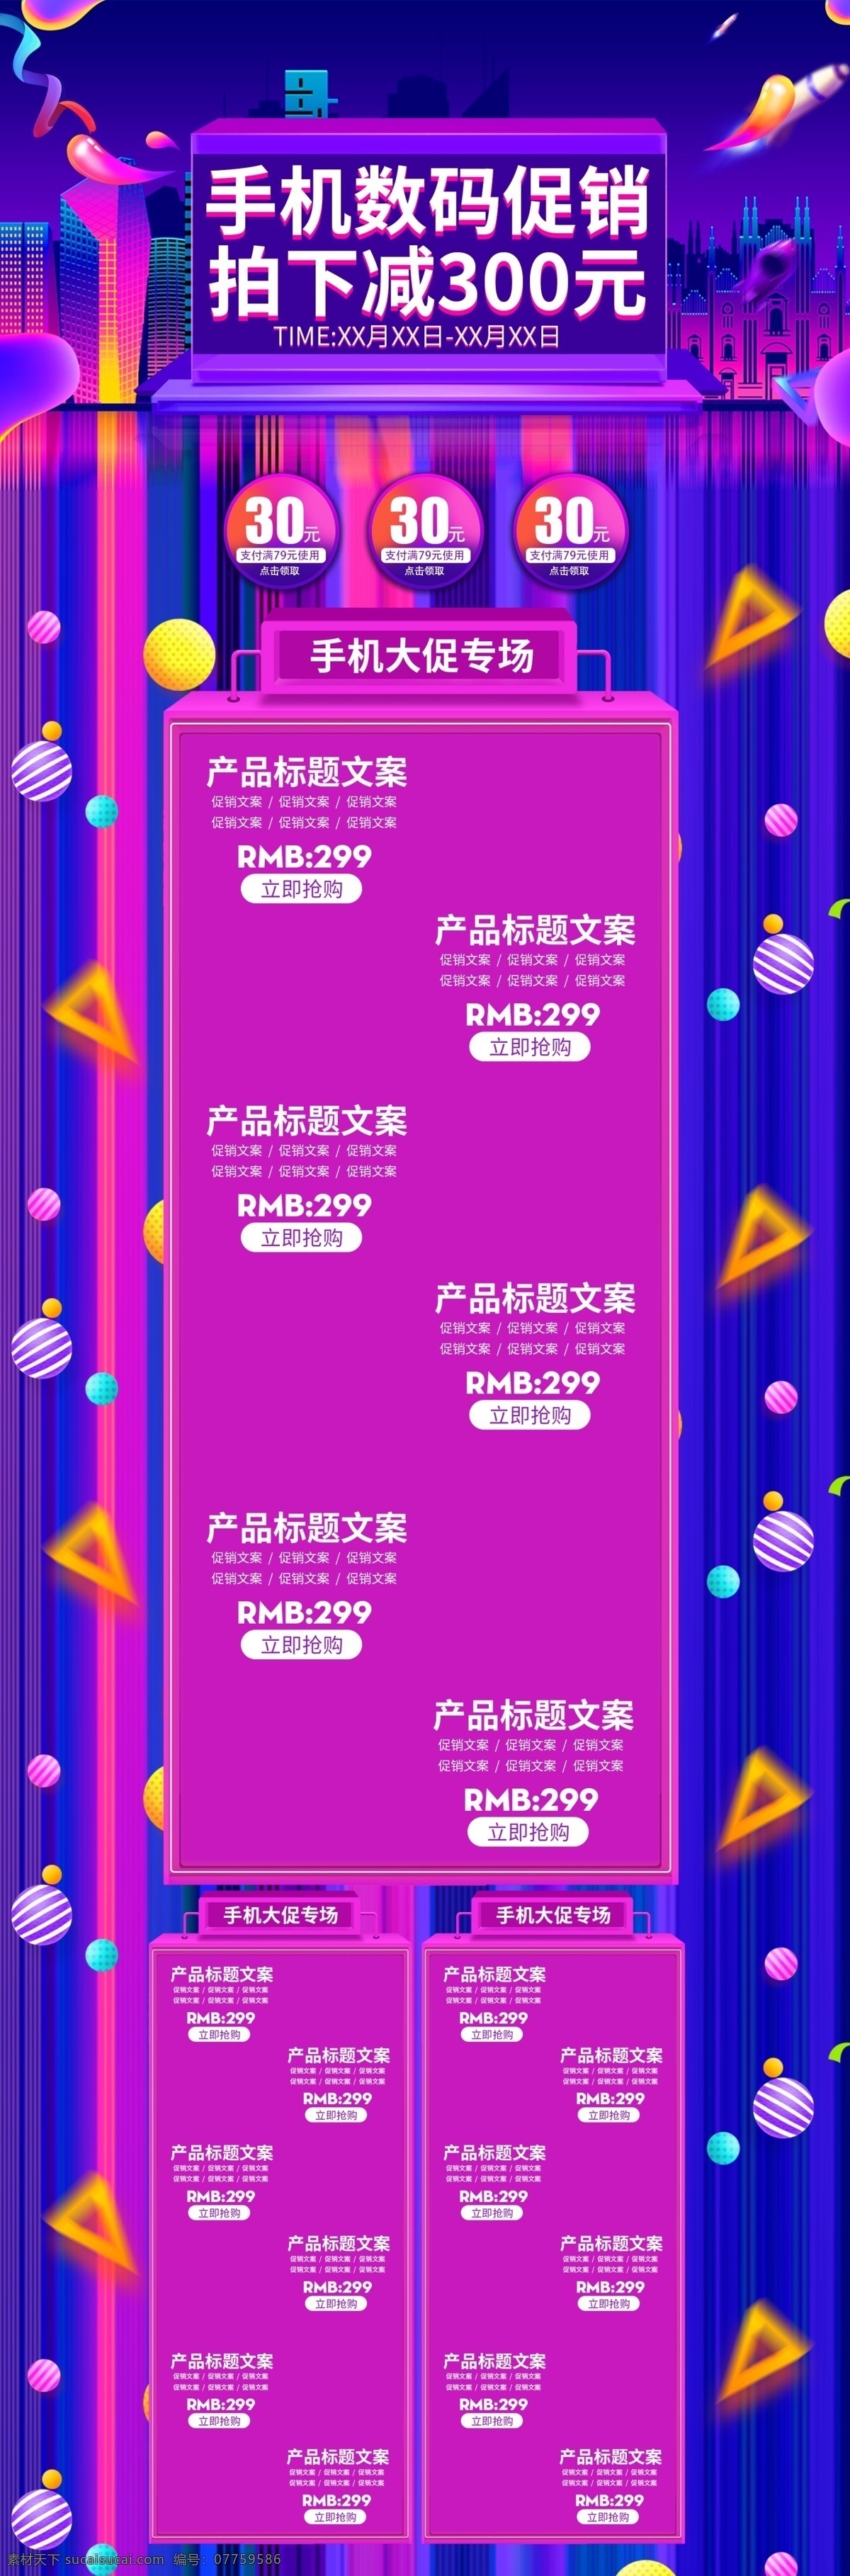 紫色 炫 酷 欧普 风 手机 数码 首页 促销 电商 模板 炫酷 欧普风 装修